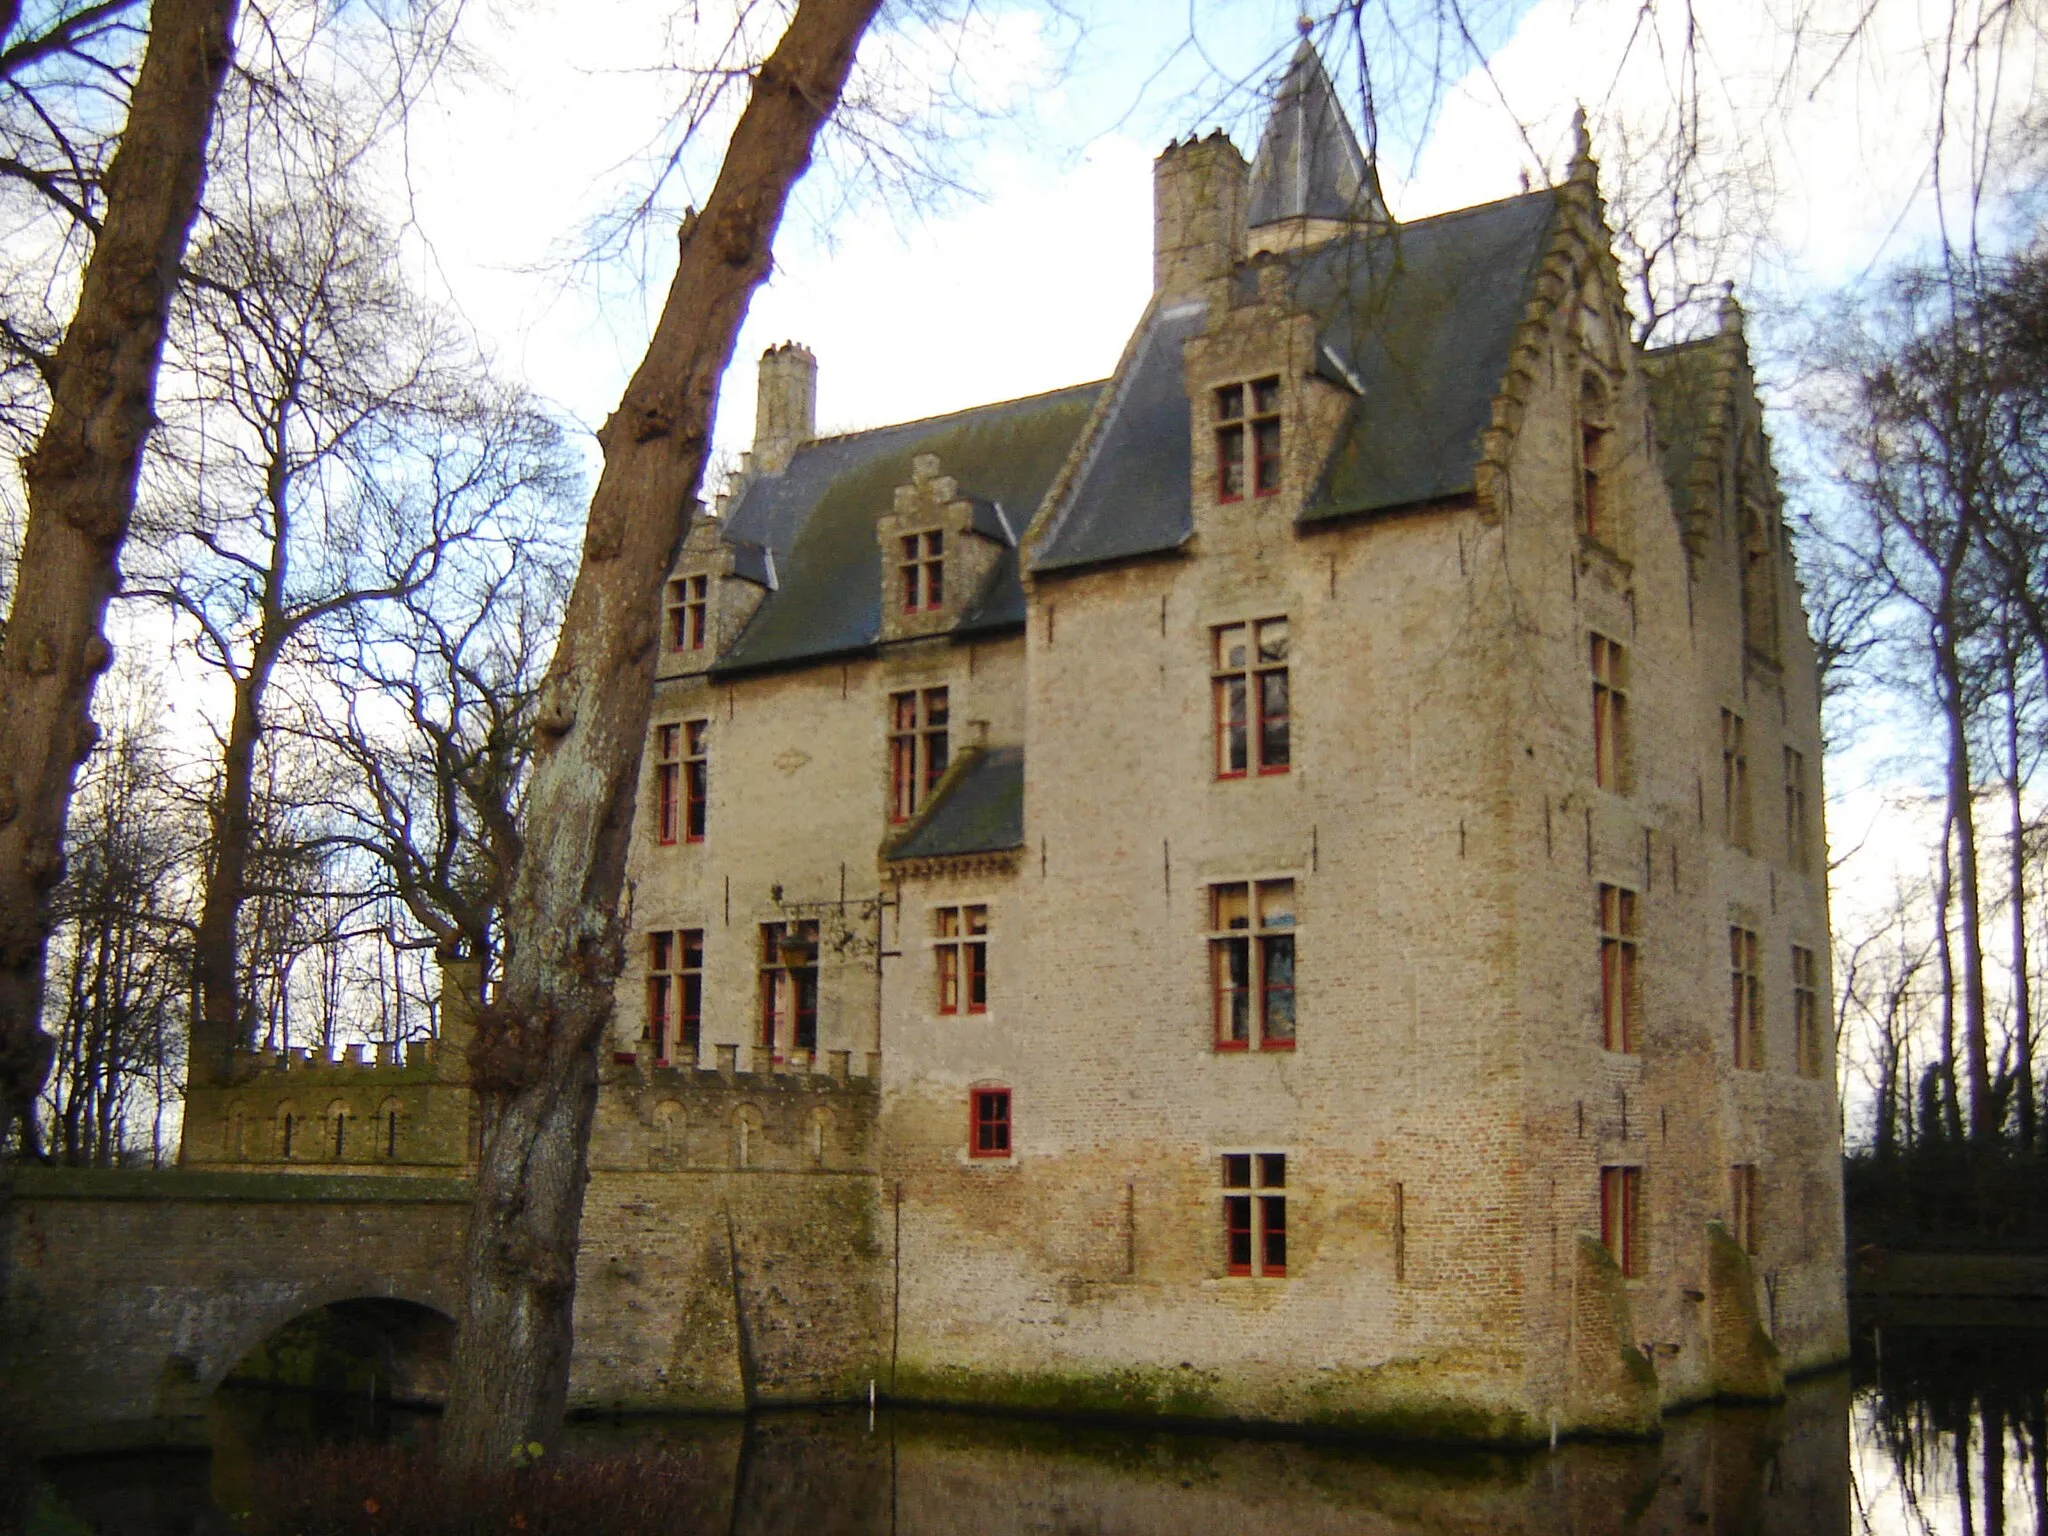 Photo showing: Kasteel van Beauvoorde in Wulveringem/Beauvoorde, Veurne. Castle of Beauvoorde in Wulveringem/Beauvoorde, Veurne, West-Flanders, Belgium